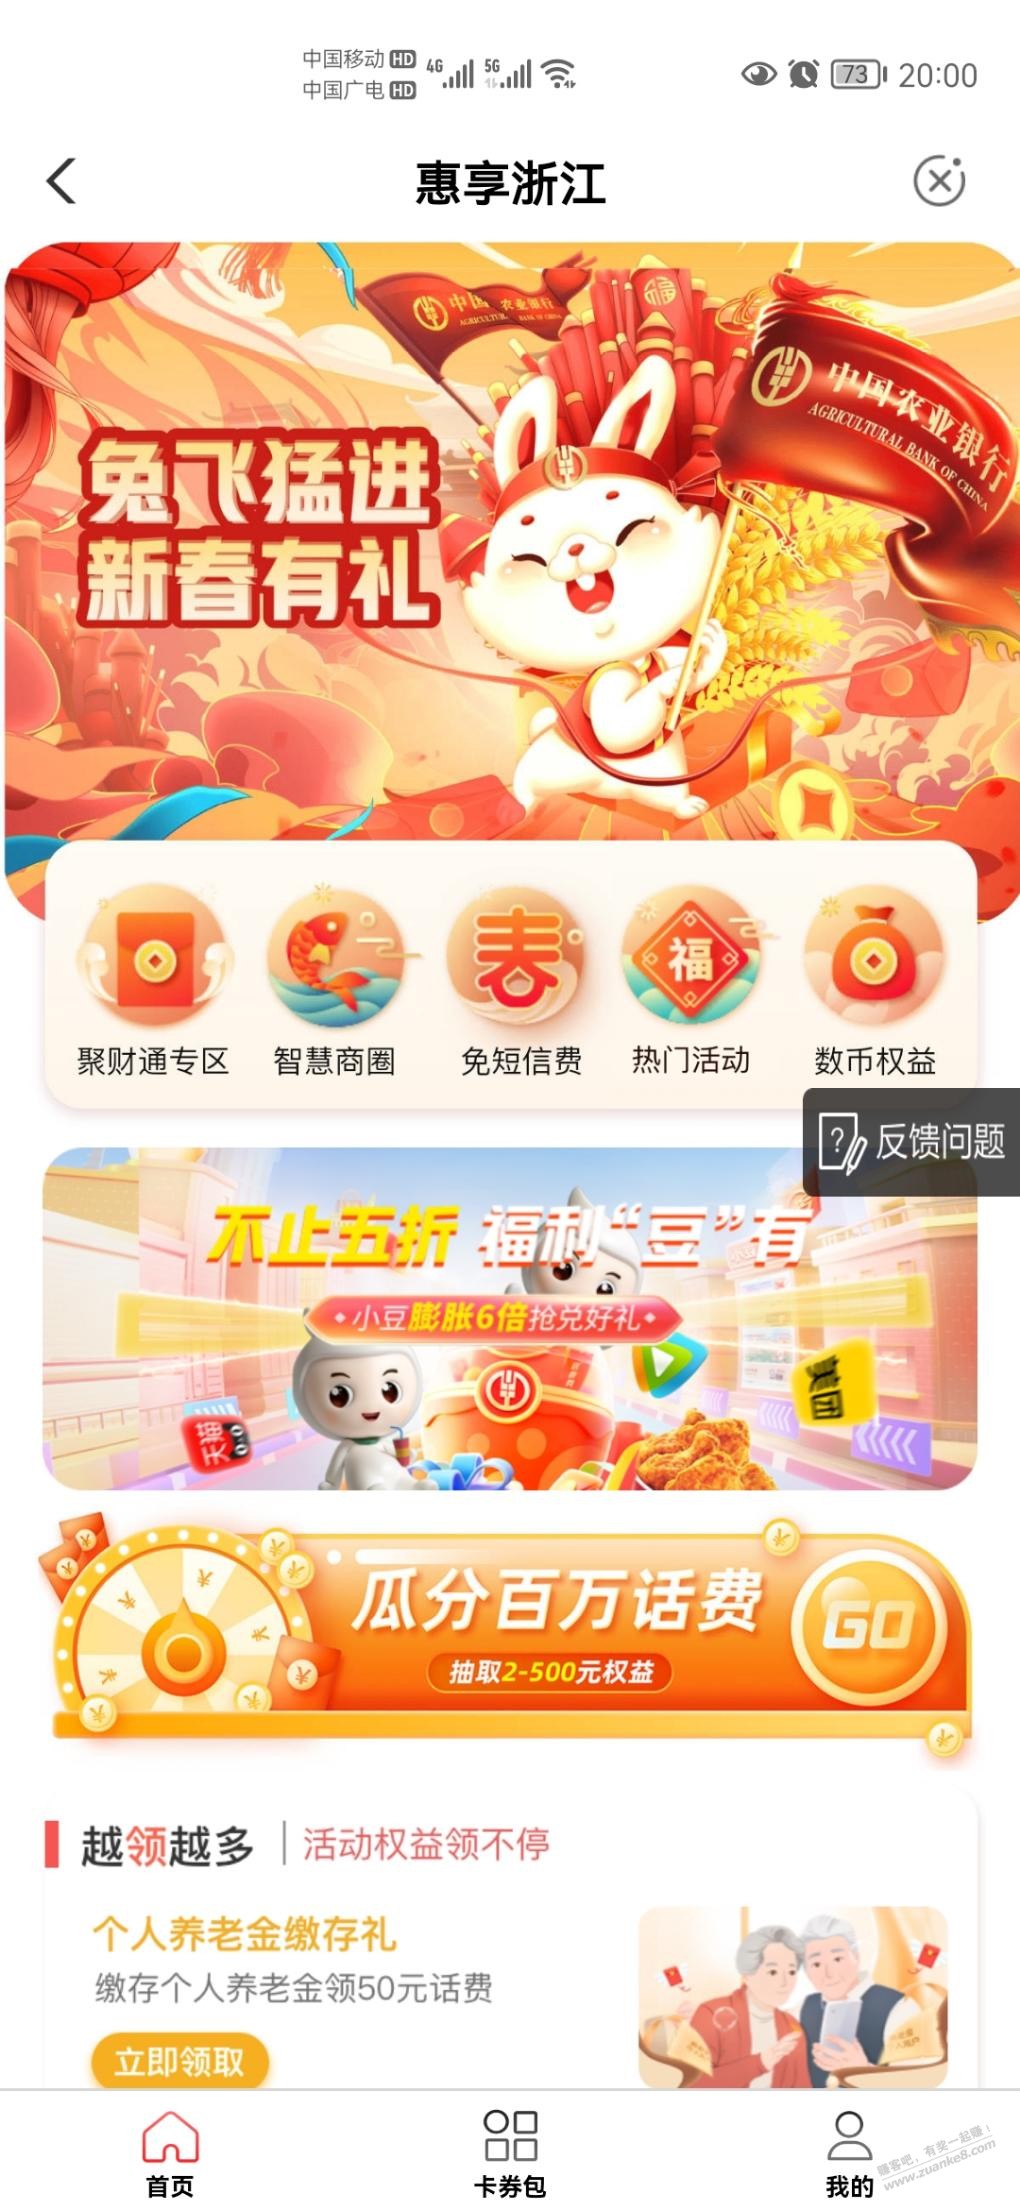 小豆换猫超卡-惠小助(52huixz.com)